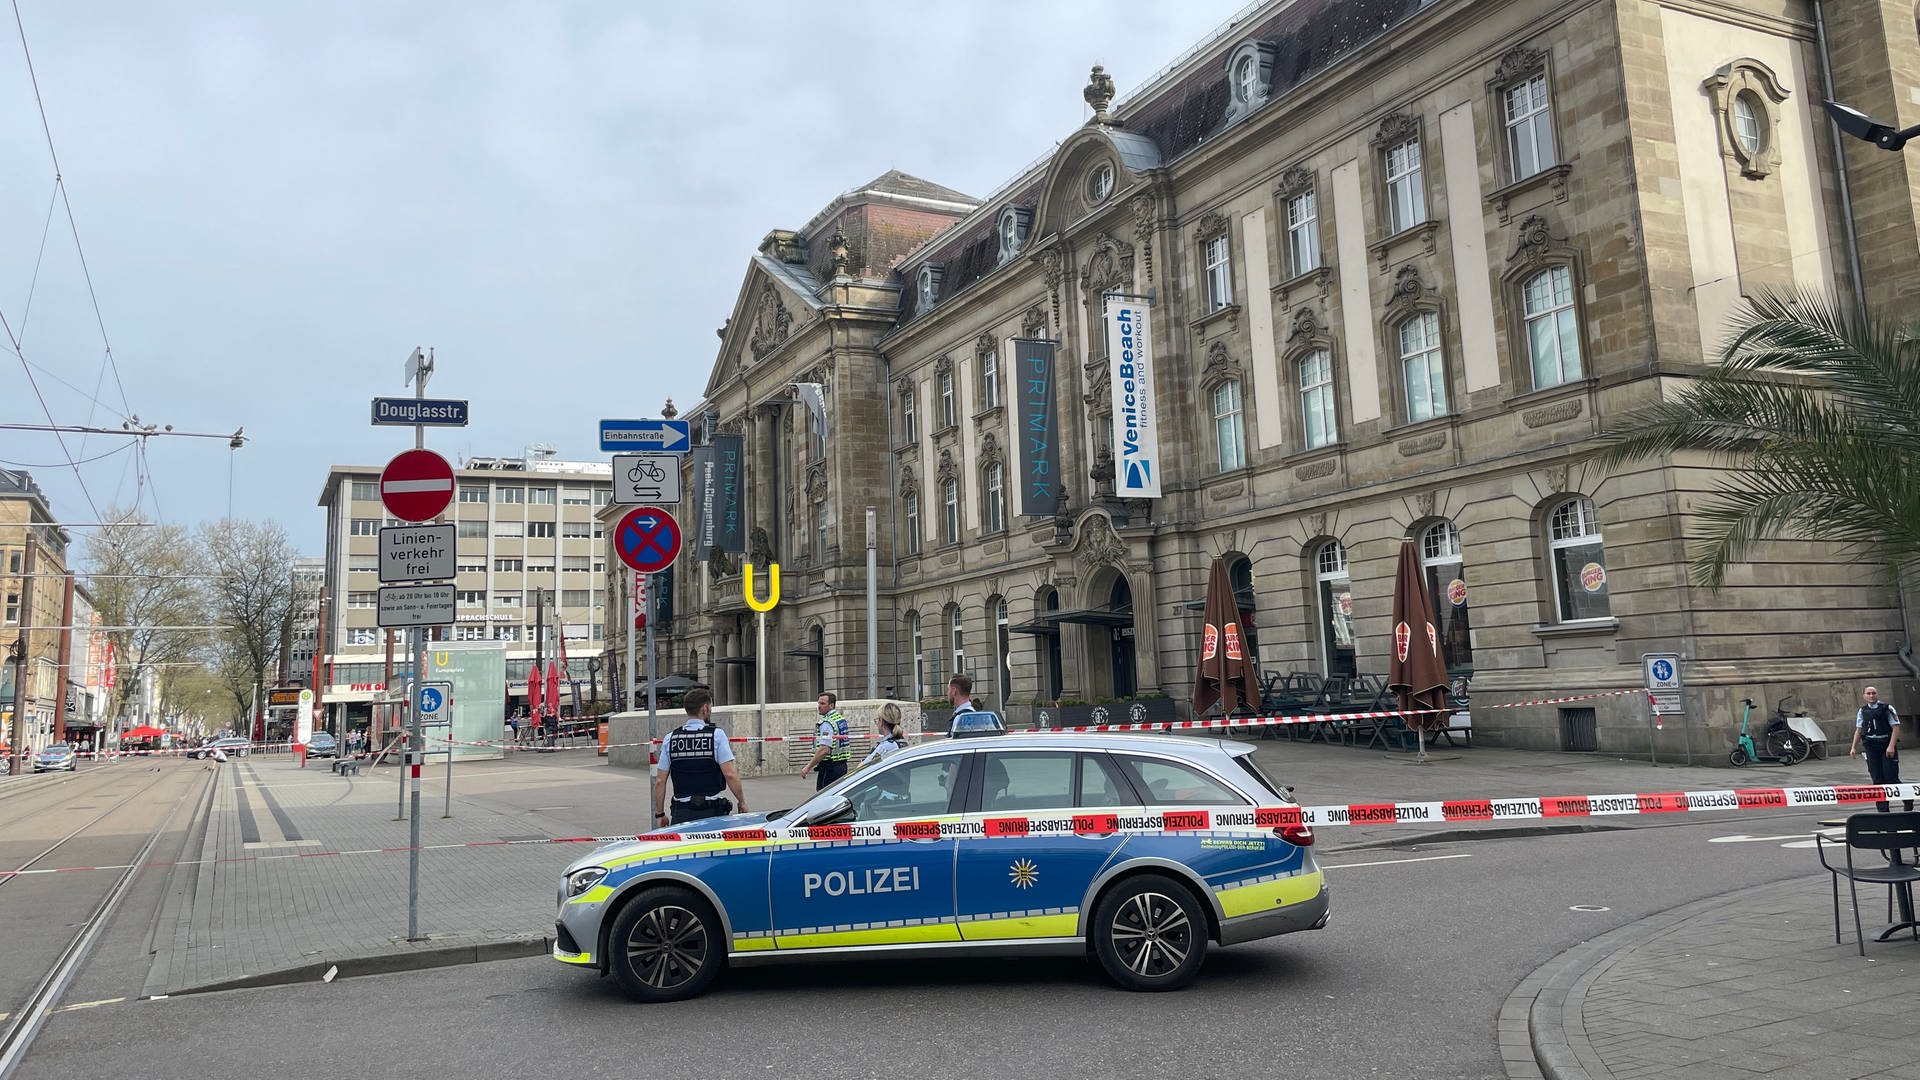 Polizeieinsatz beendet: Verdächtiger Gegenstand in Karlsruhe ungefährlich